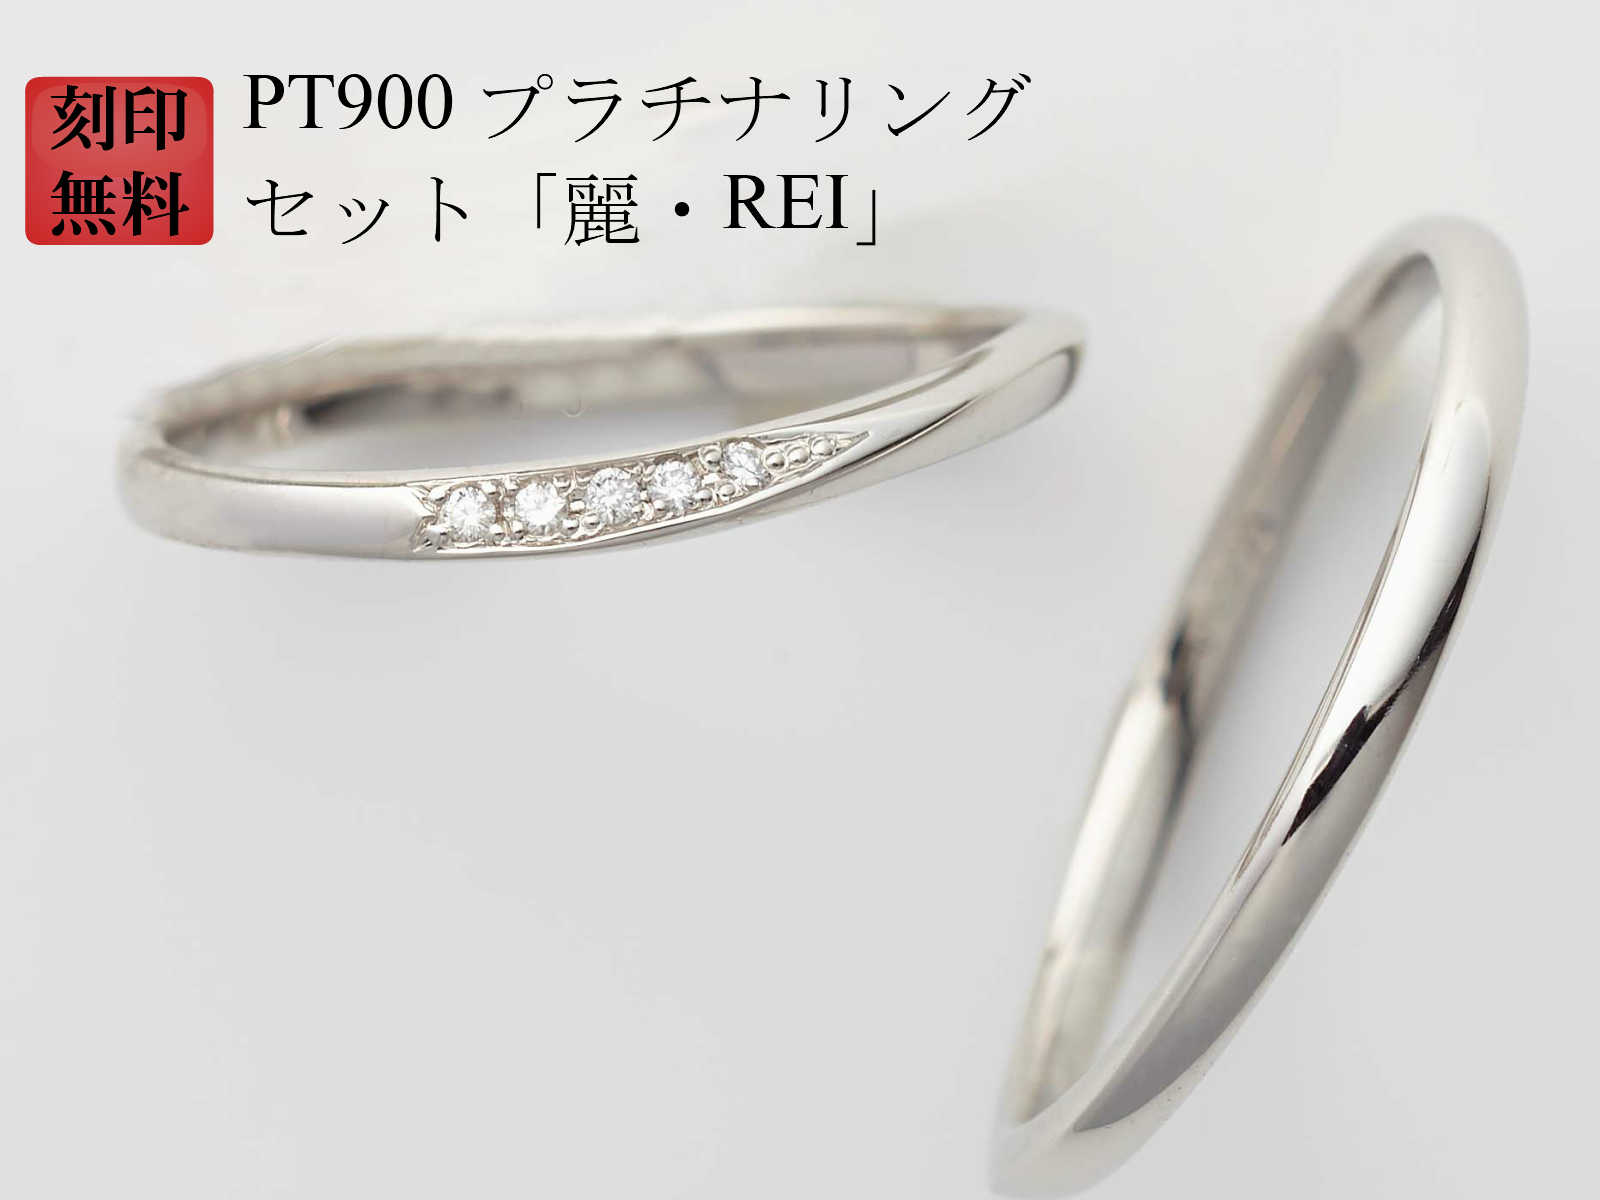 超人気の 結婚指輪 マリッジリング Pt900 プラチナ リング 刻印無料 プラチナリング 純プラチナ 90 ダイヤ入り 2本 ペアリング 麗 Rei 母の日ギフト 安い Matijevic Rs